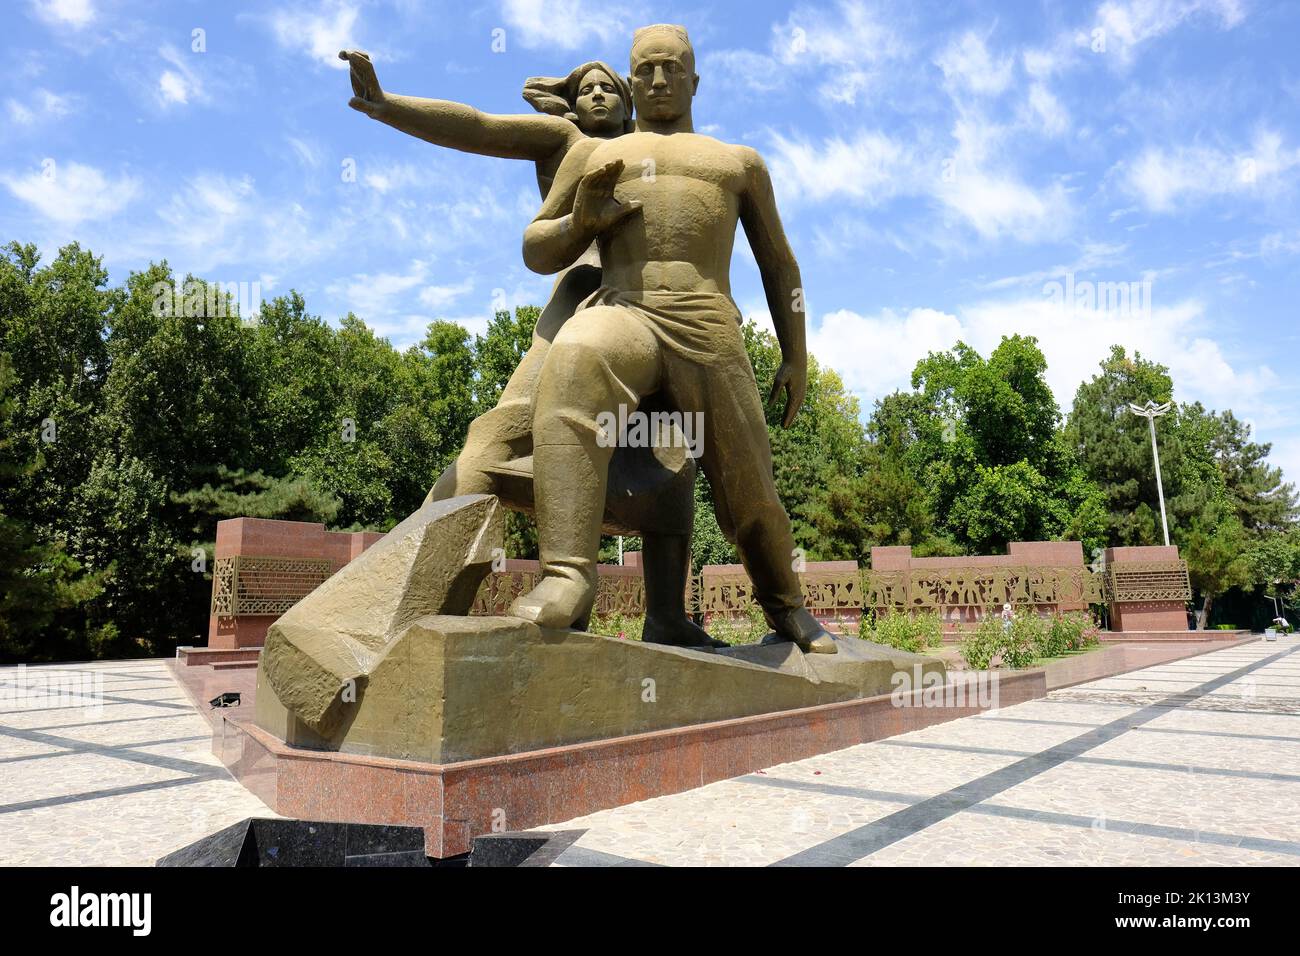 Tashkent Uzbekistán - El Memorial del Terremoto honra a las víctimas del terremoto de 1966 ( 26th de abril de 1966 ) que destruyó grandes partes de Tashkent Foto de stock